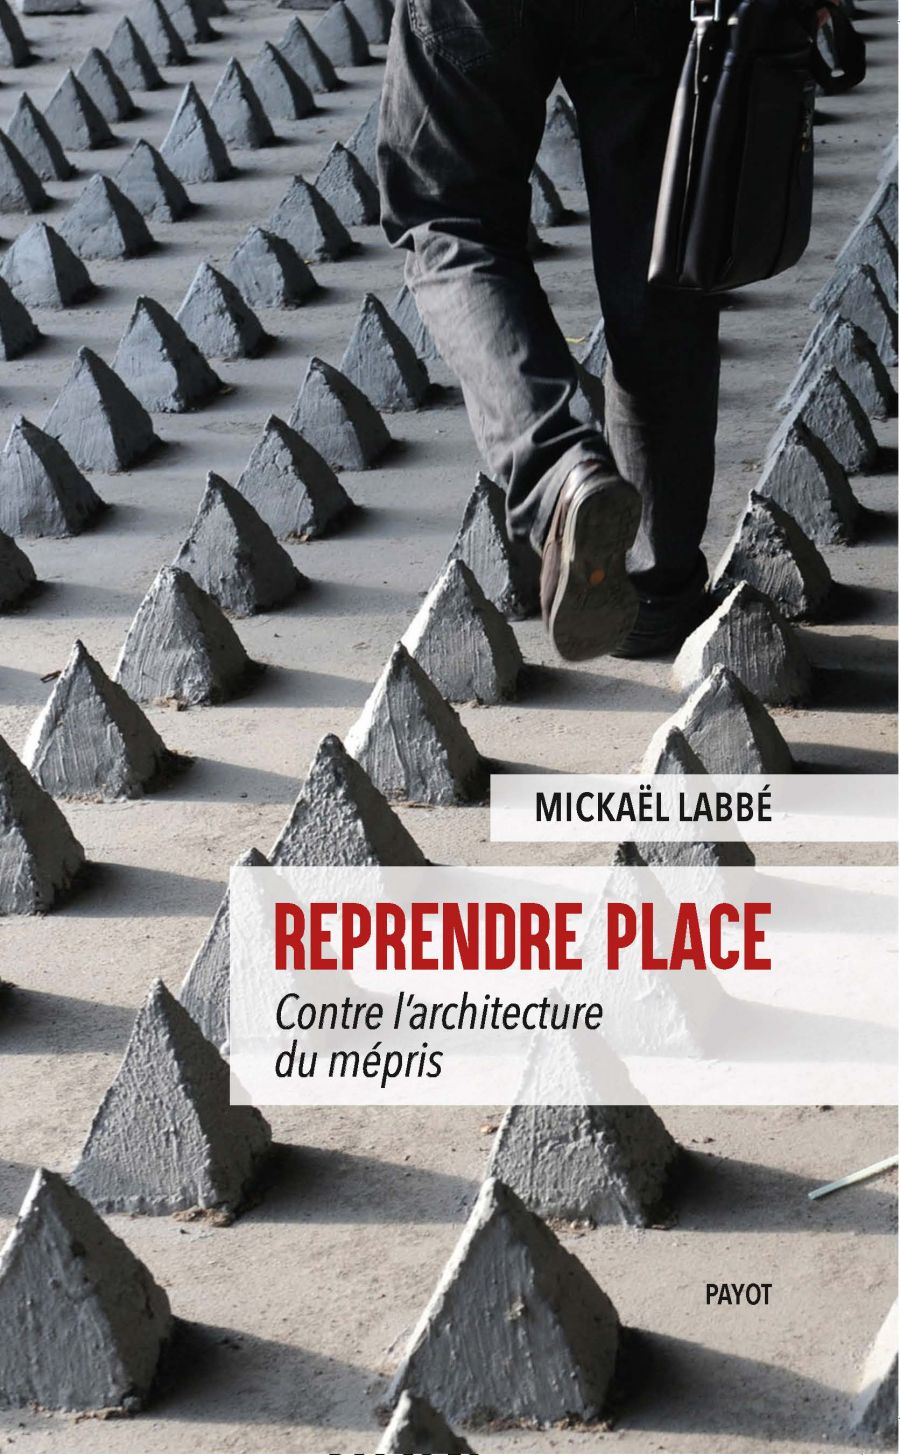 Reprendre place, Mickaël Labbé aux éditions Payot